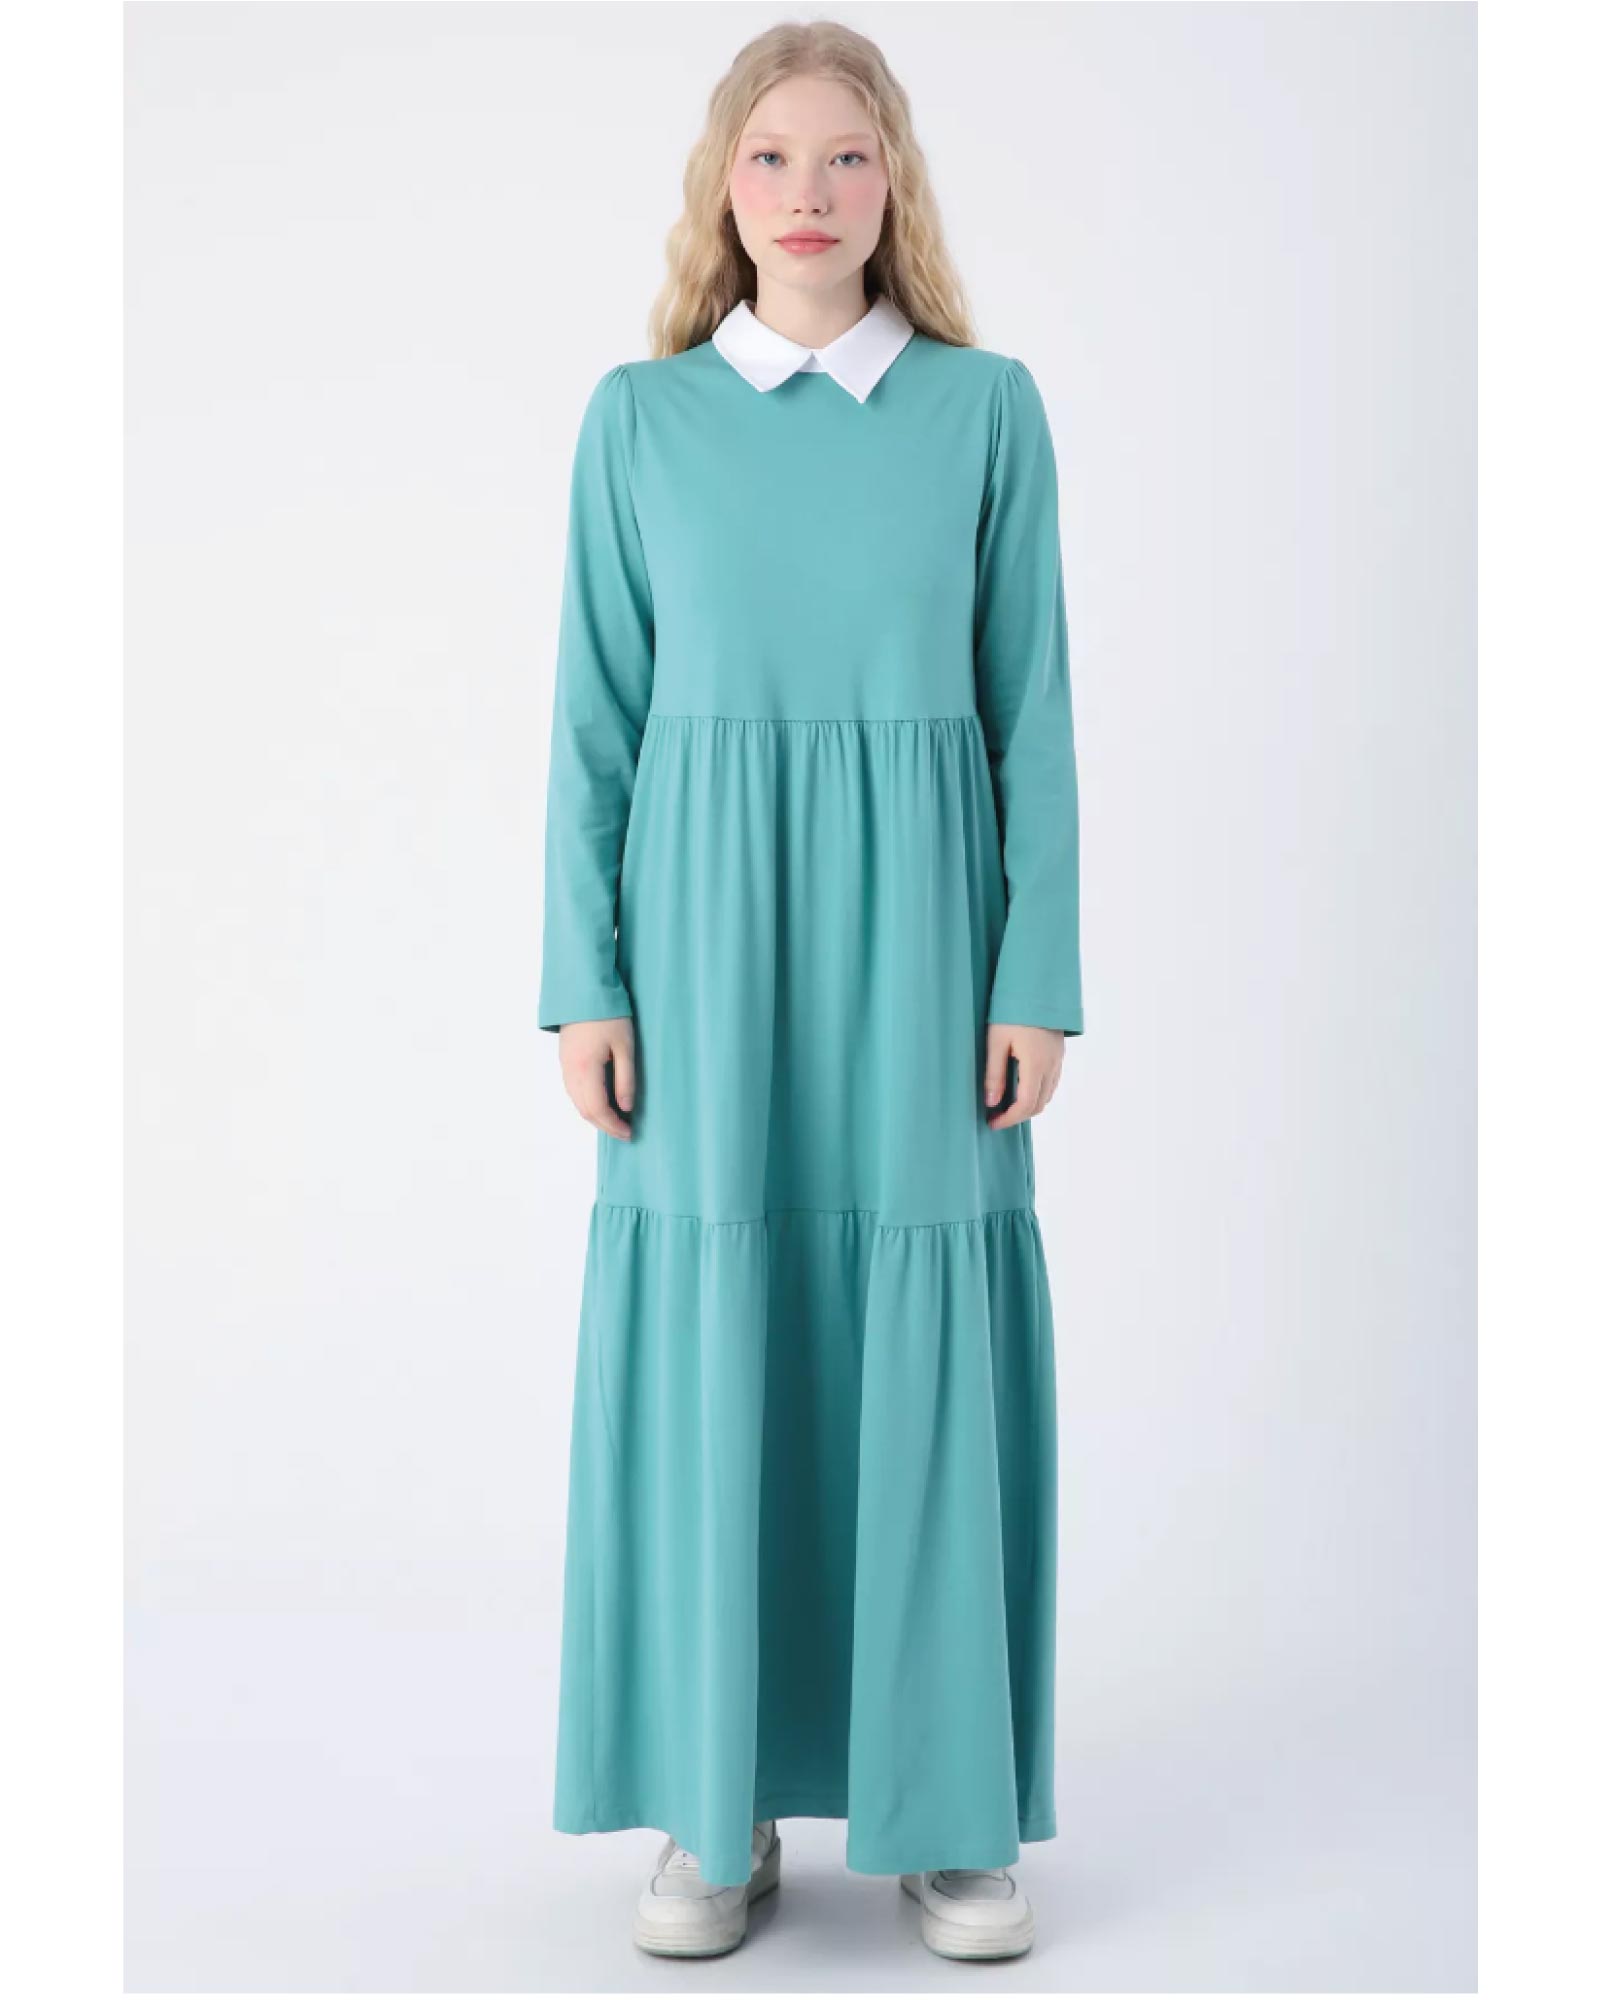 Hijab-Kleid Baumwollkleid mit klassischem Hemdkragen, praktischen Taschen und charmanten Rüschen